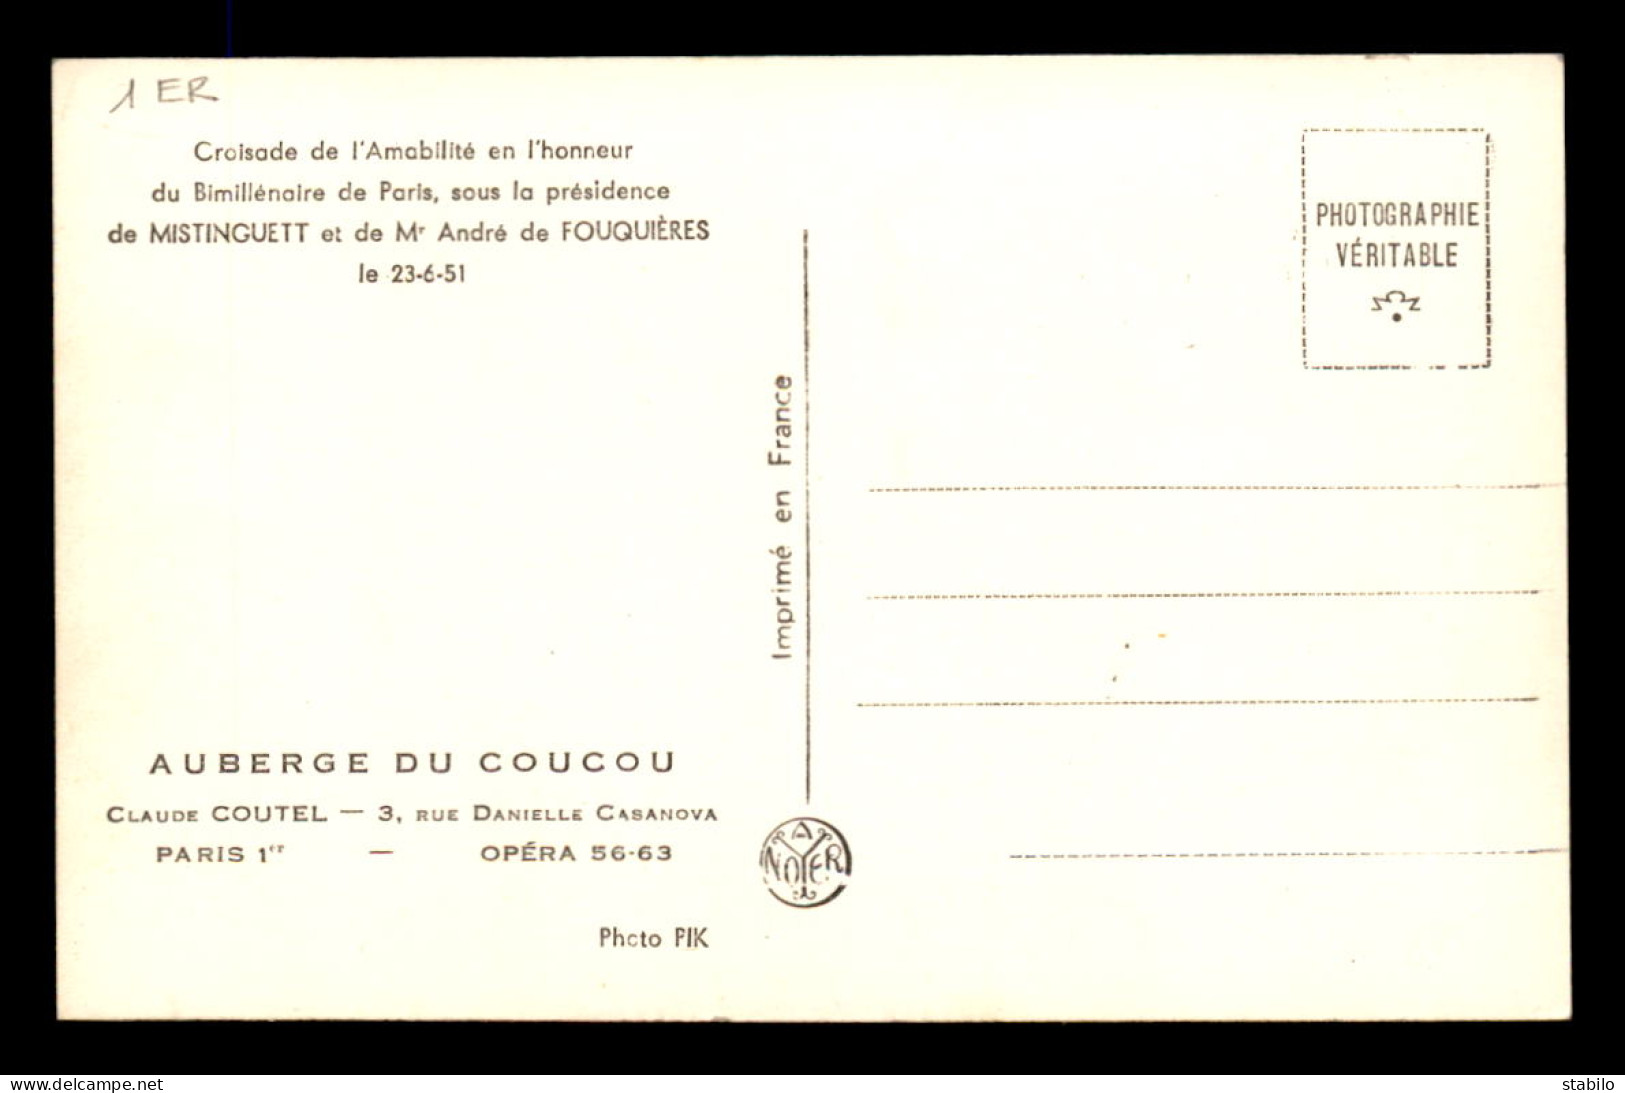 75 - PARIS 1ER - AUBERGE DU COUCOU, 3 RUE CASANOVA - CROISADE DE L'AMABILITE JUIN 1951 - MISTINGUETT ET A. DE FOUQUIERES - Distretto: 01